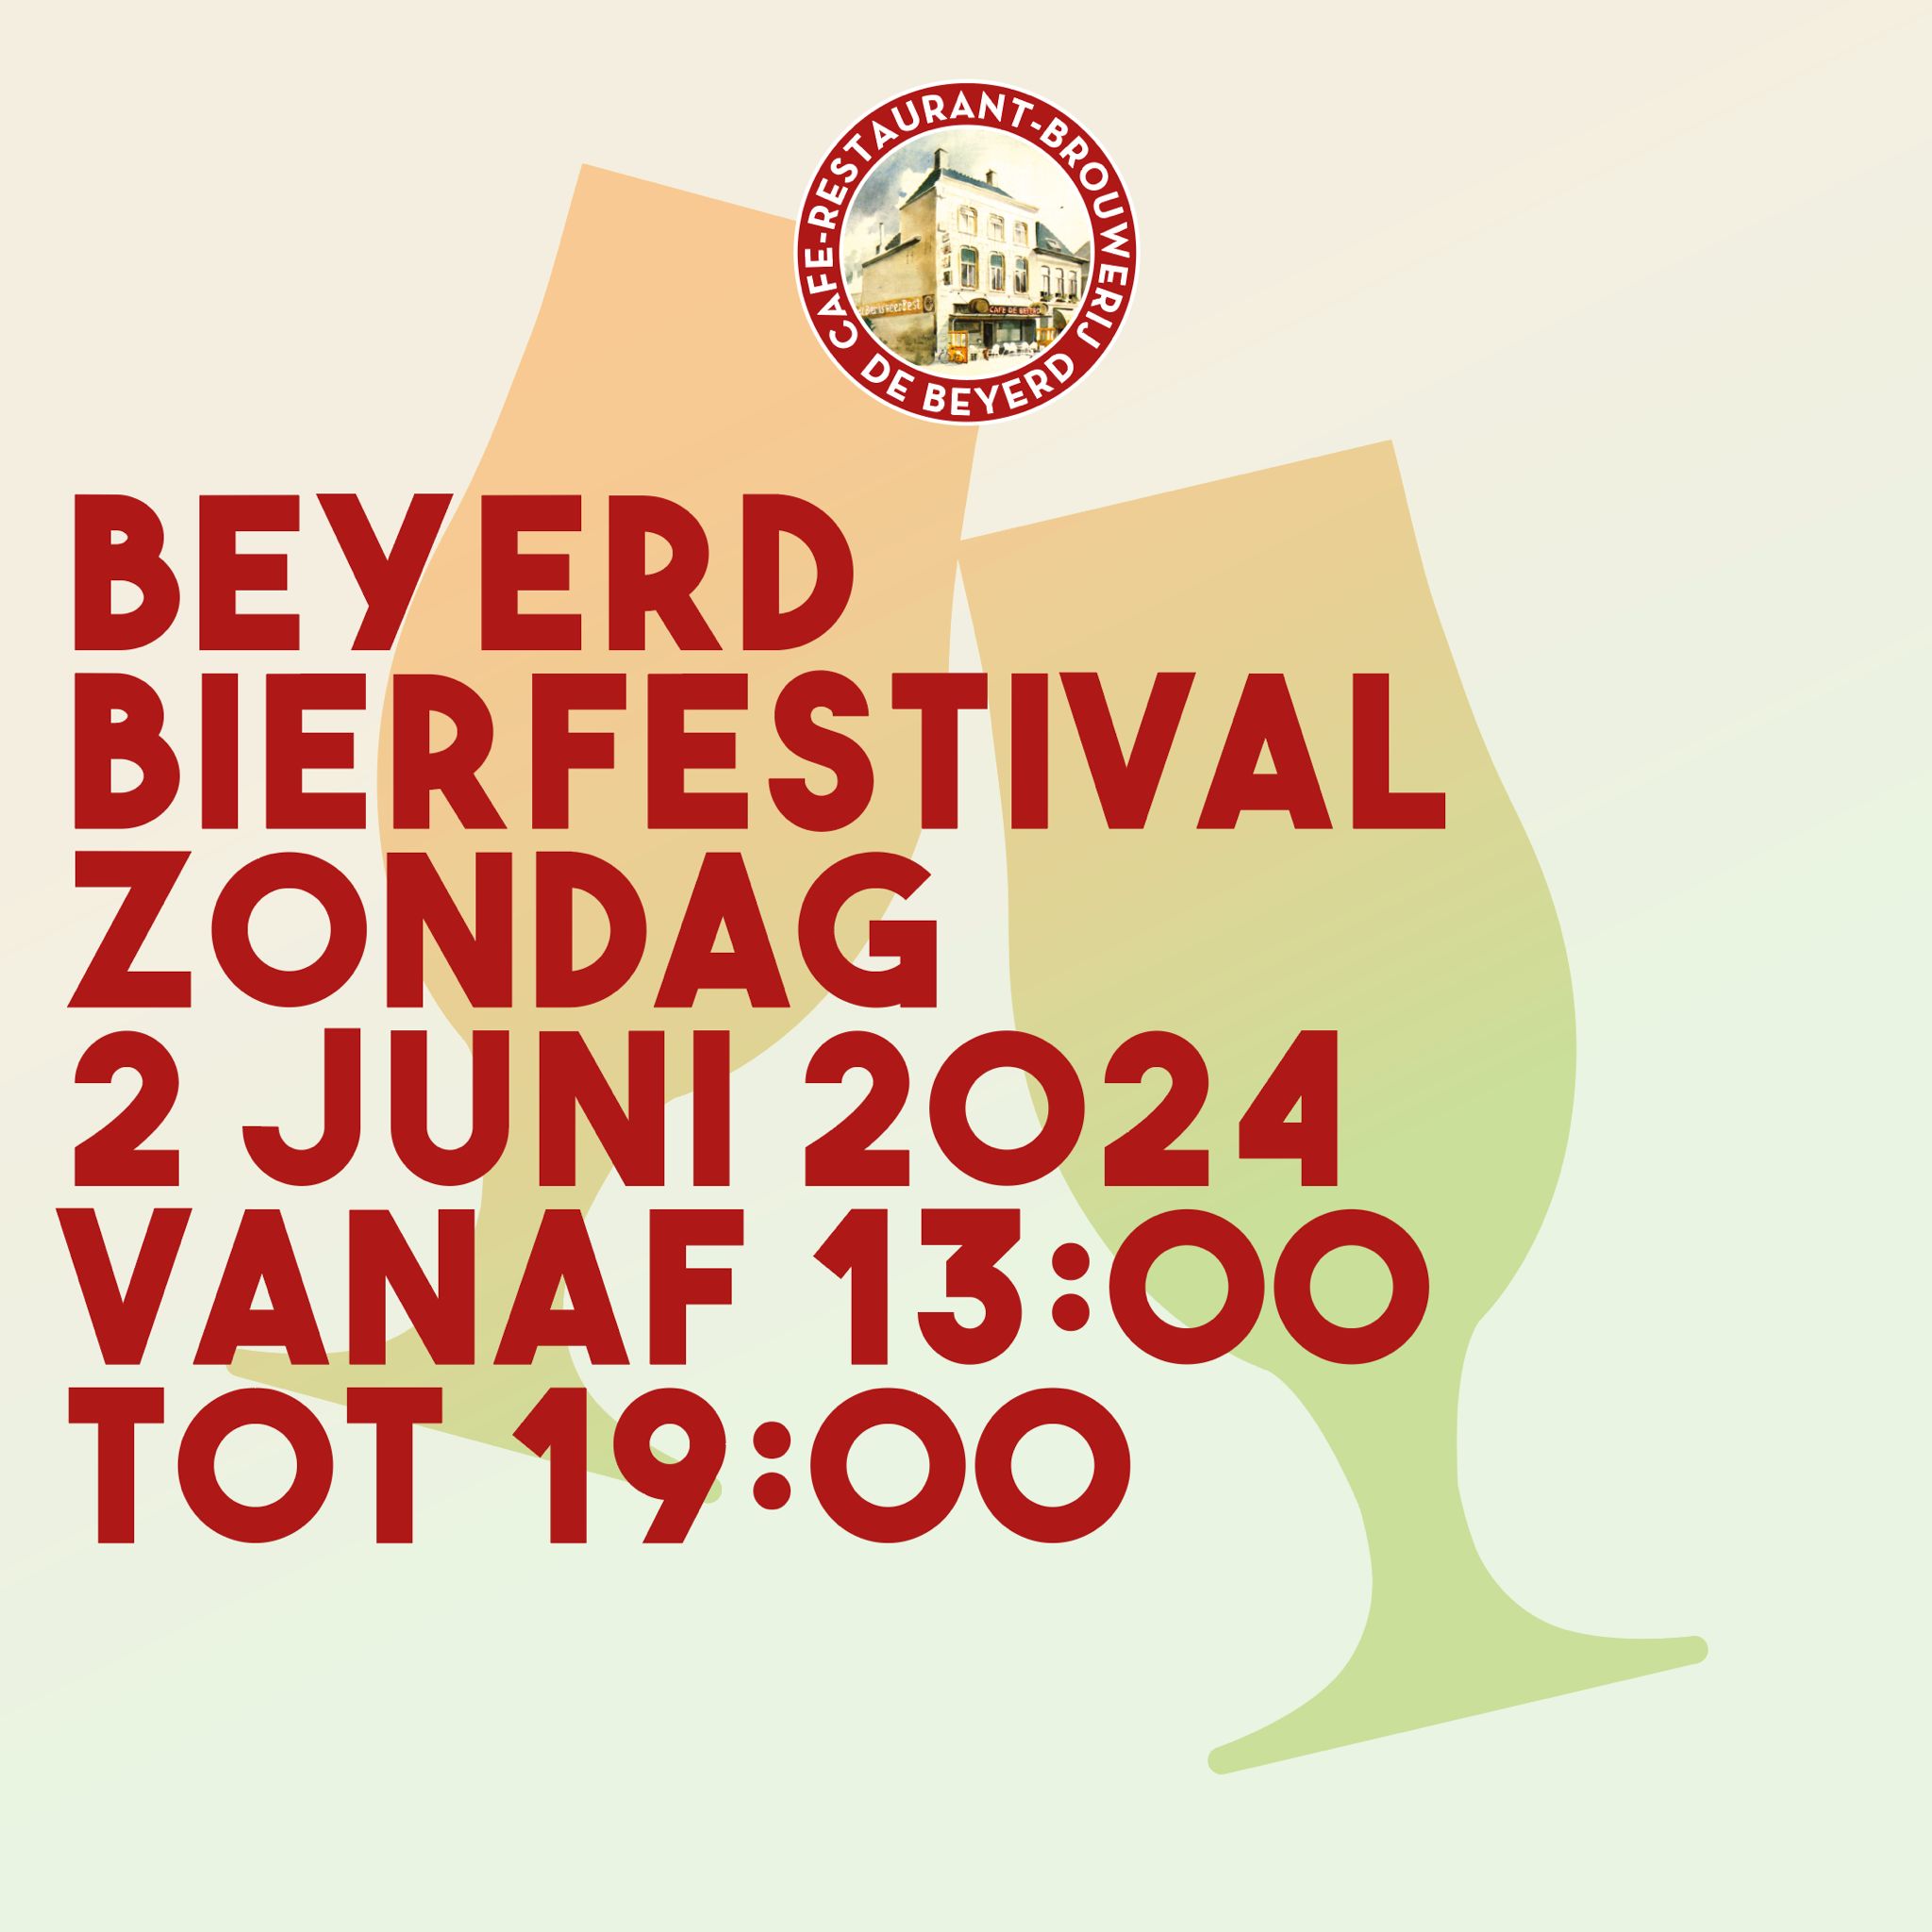 Beyerd Bierfestival